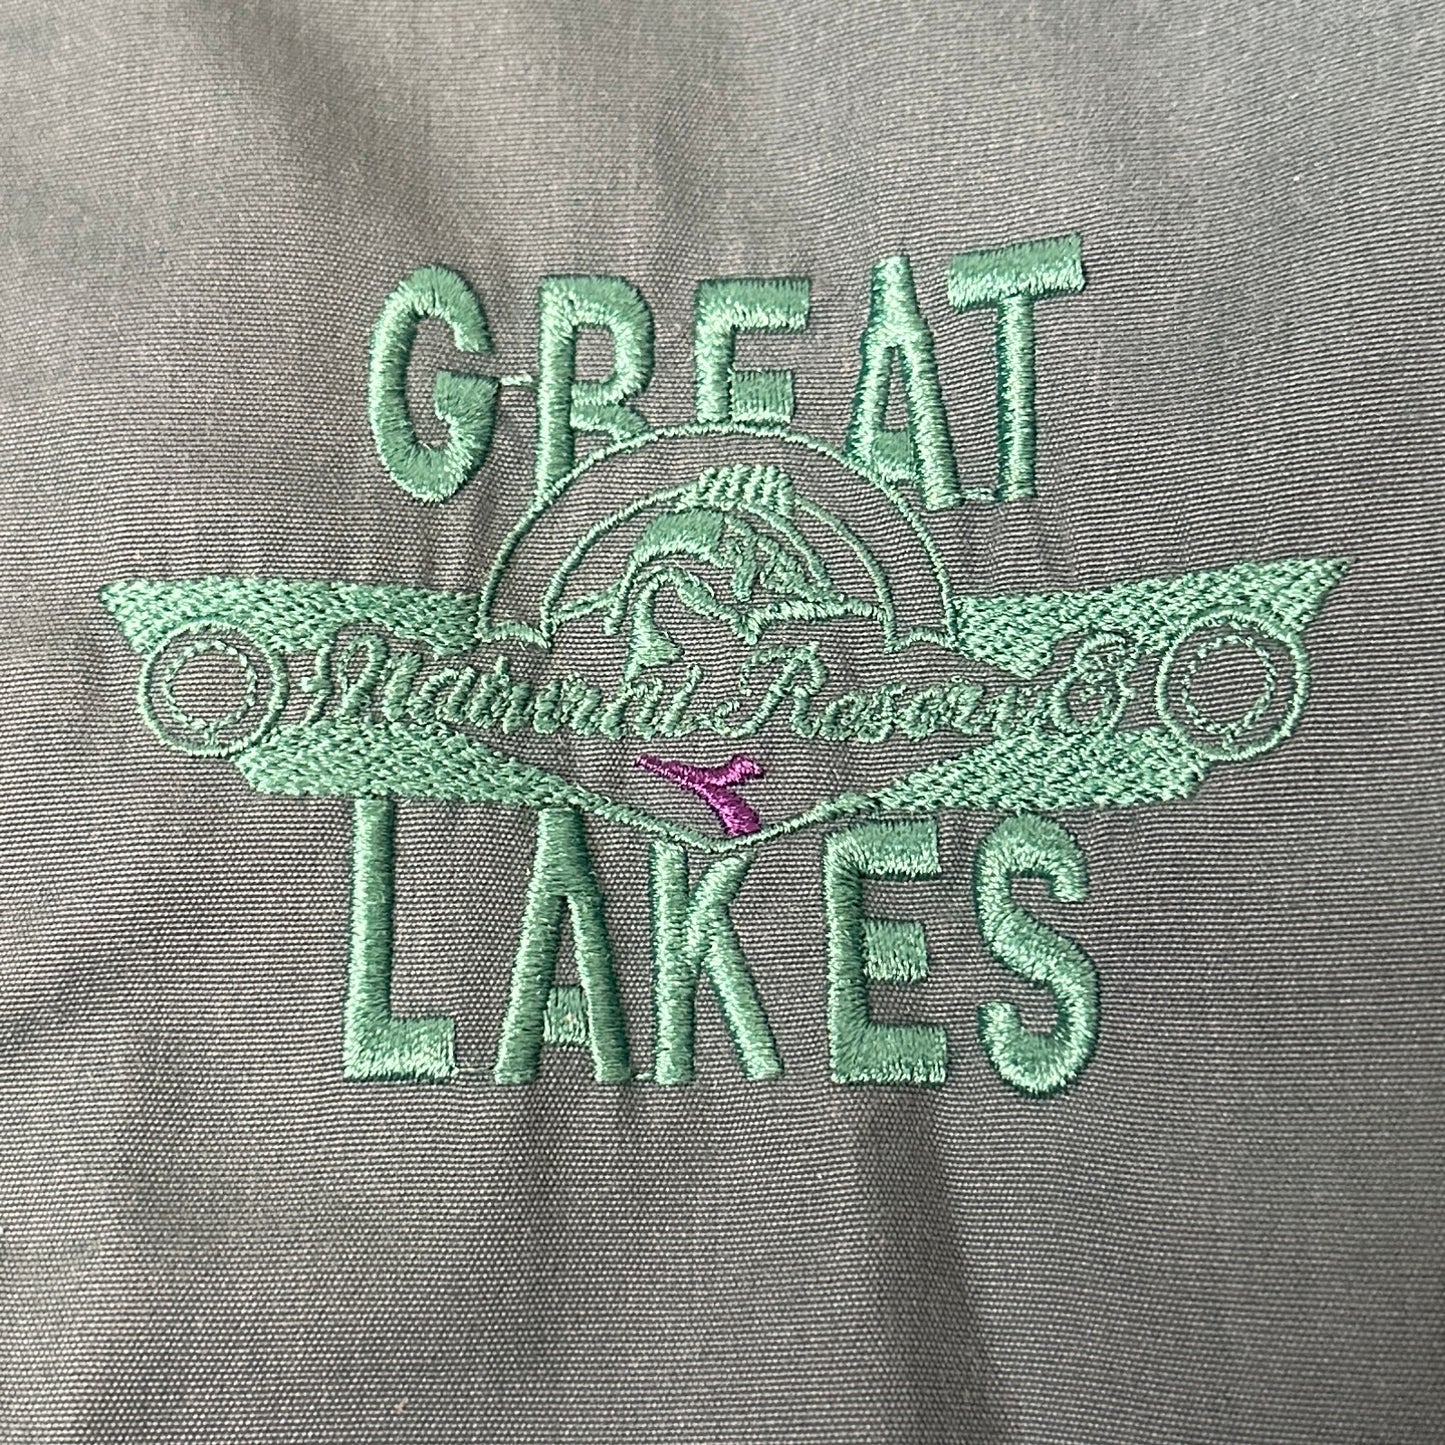 Diadora Vintage 90s Great Lakes Coat Jacket - XXL